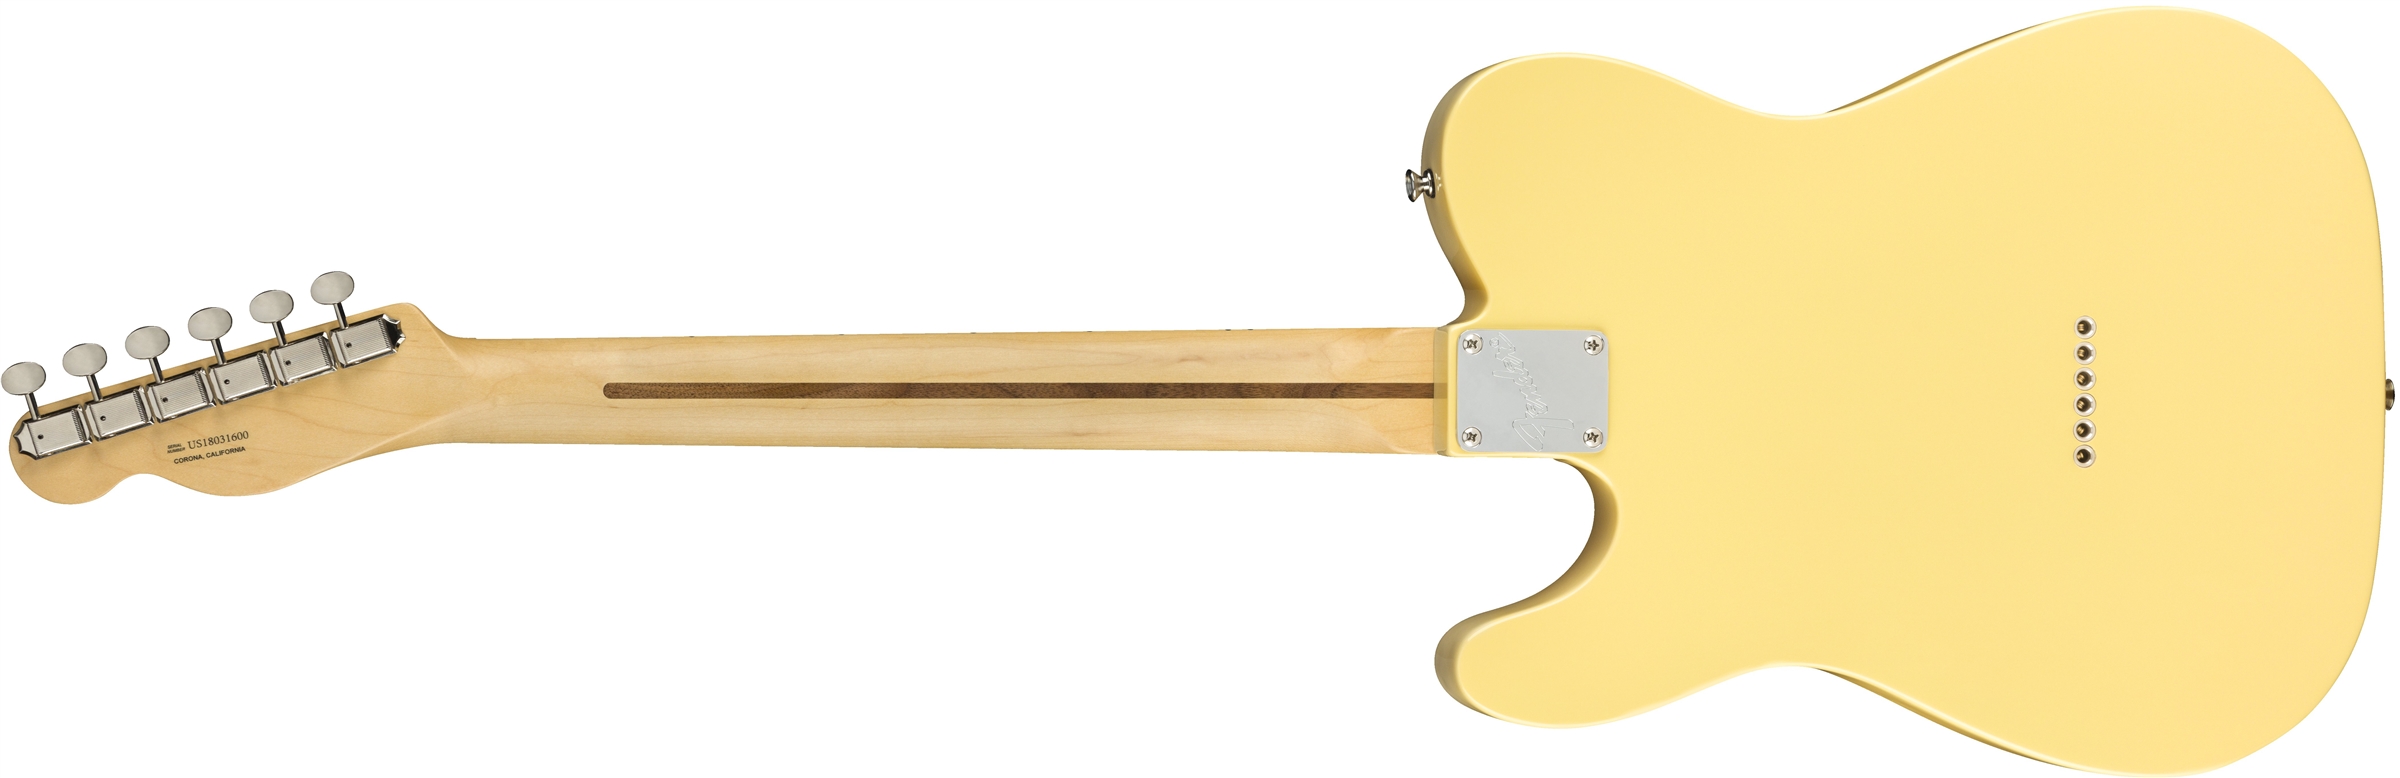 Fender Tele American Performer Usa Mn - Vintage White - E-Gitarre in Teleform - Variation 1